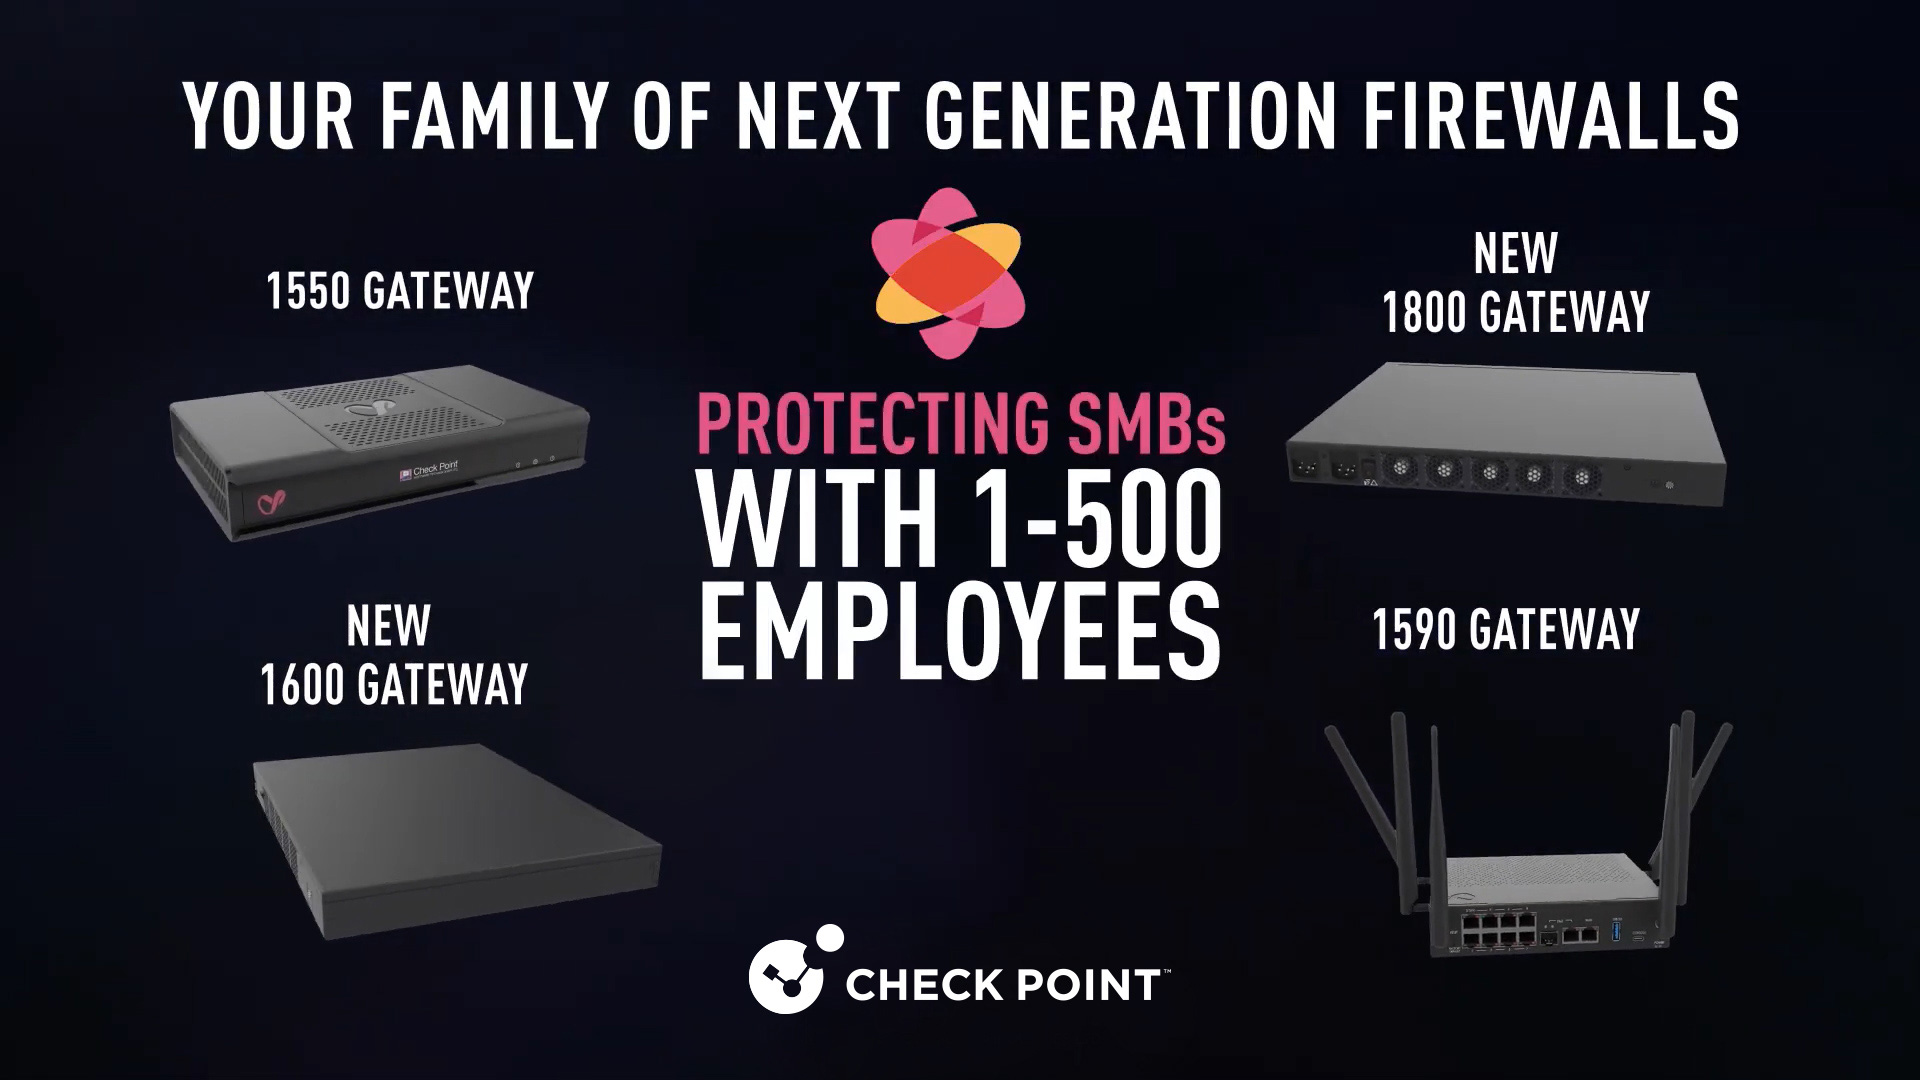 Sua família de firewalls de última geração: protegendo pequenas e médias empresas com 1 a 500 funcionários